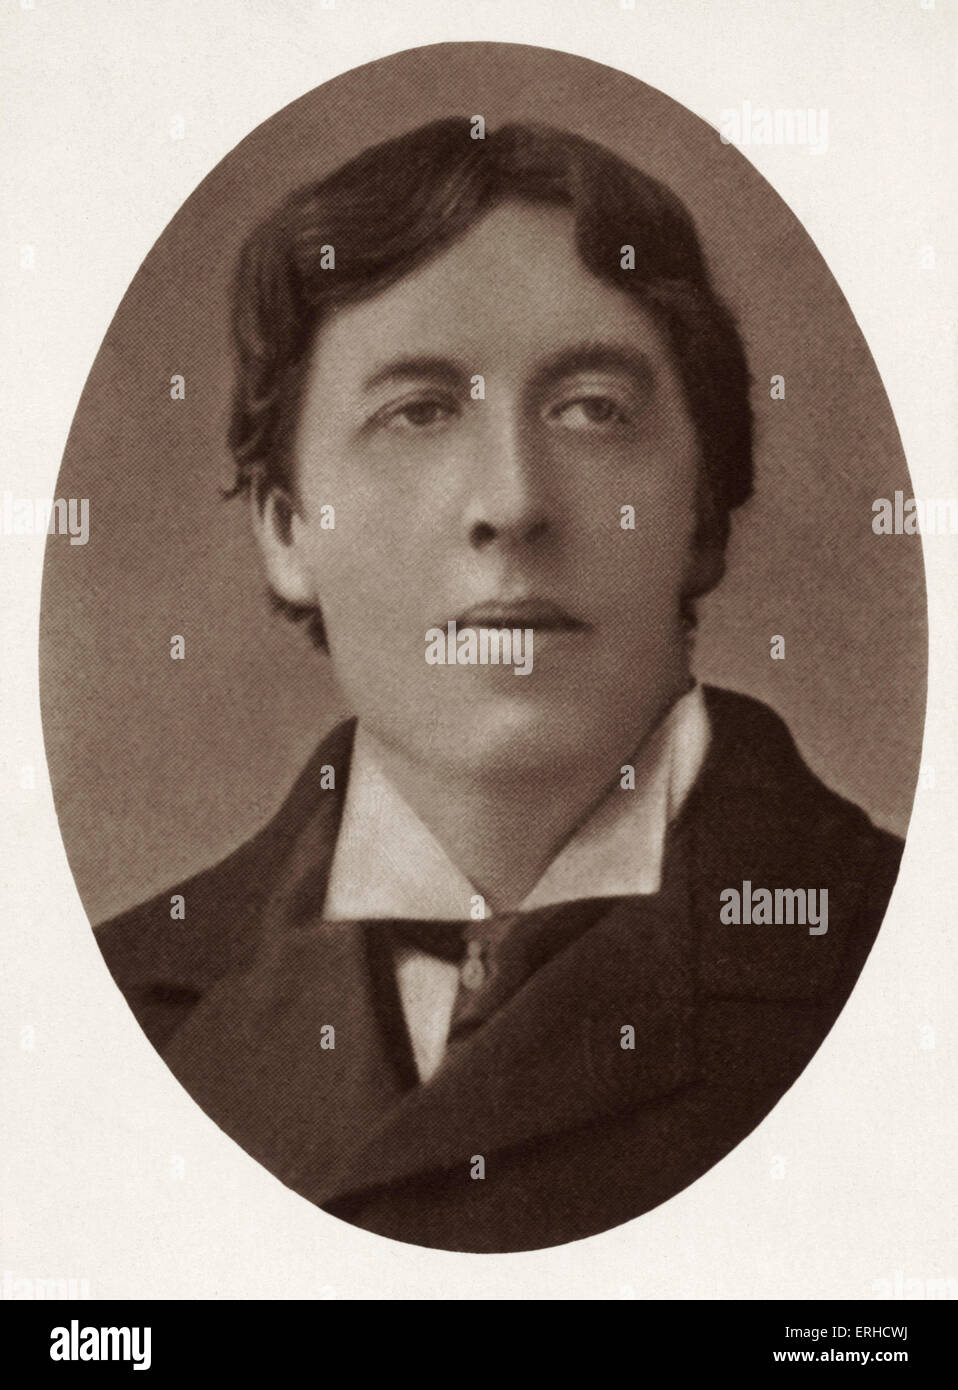 WILDE, Oscar - auteur et dramaturge anglo-irlandais, 1854-1900 Banque D'Images